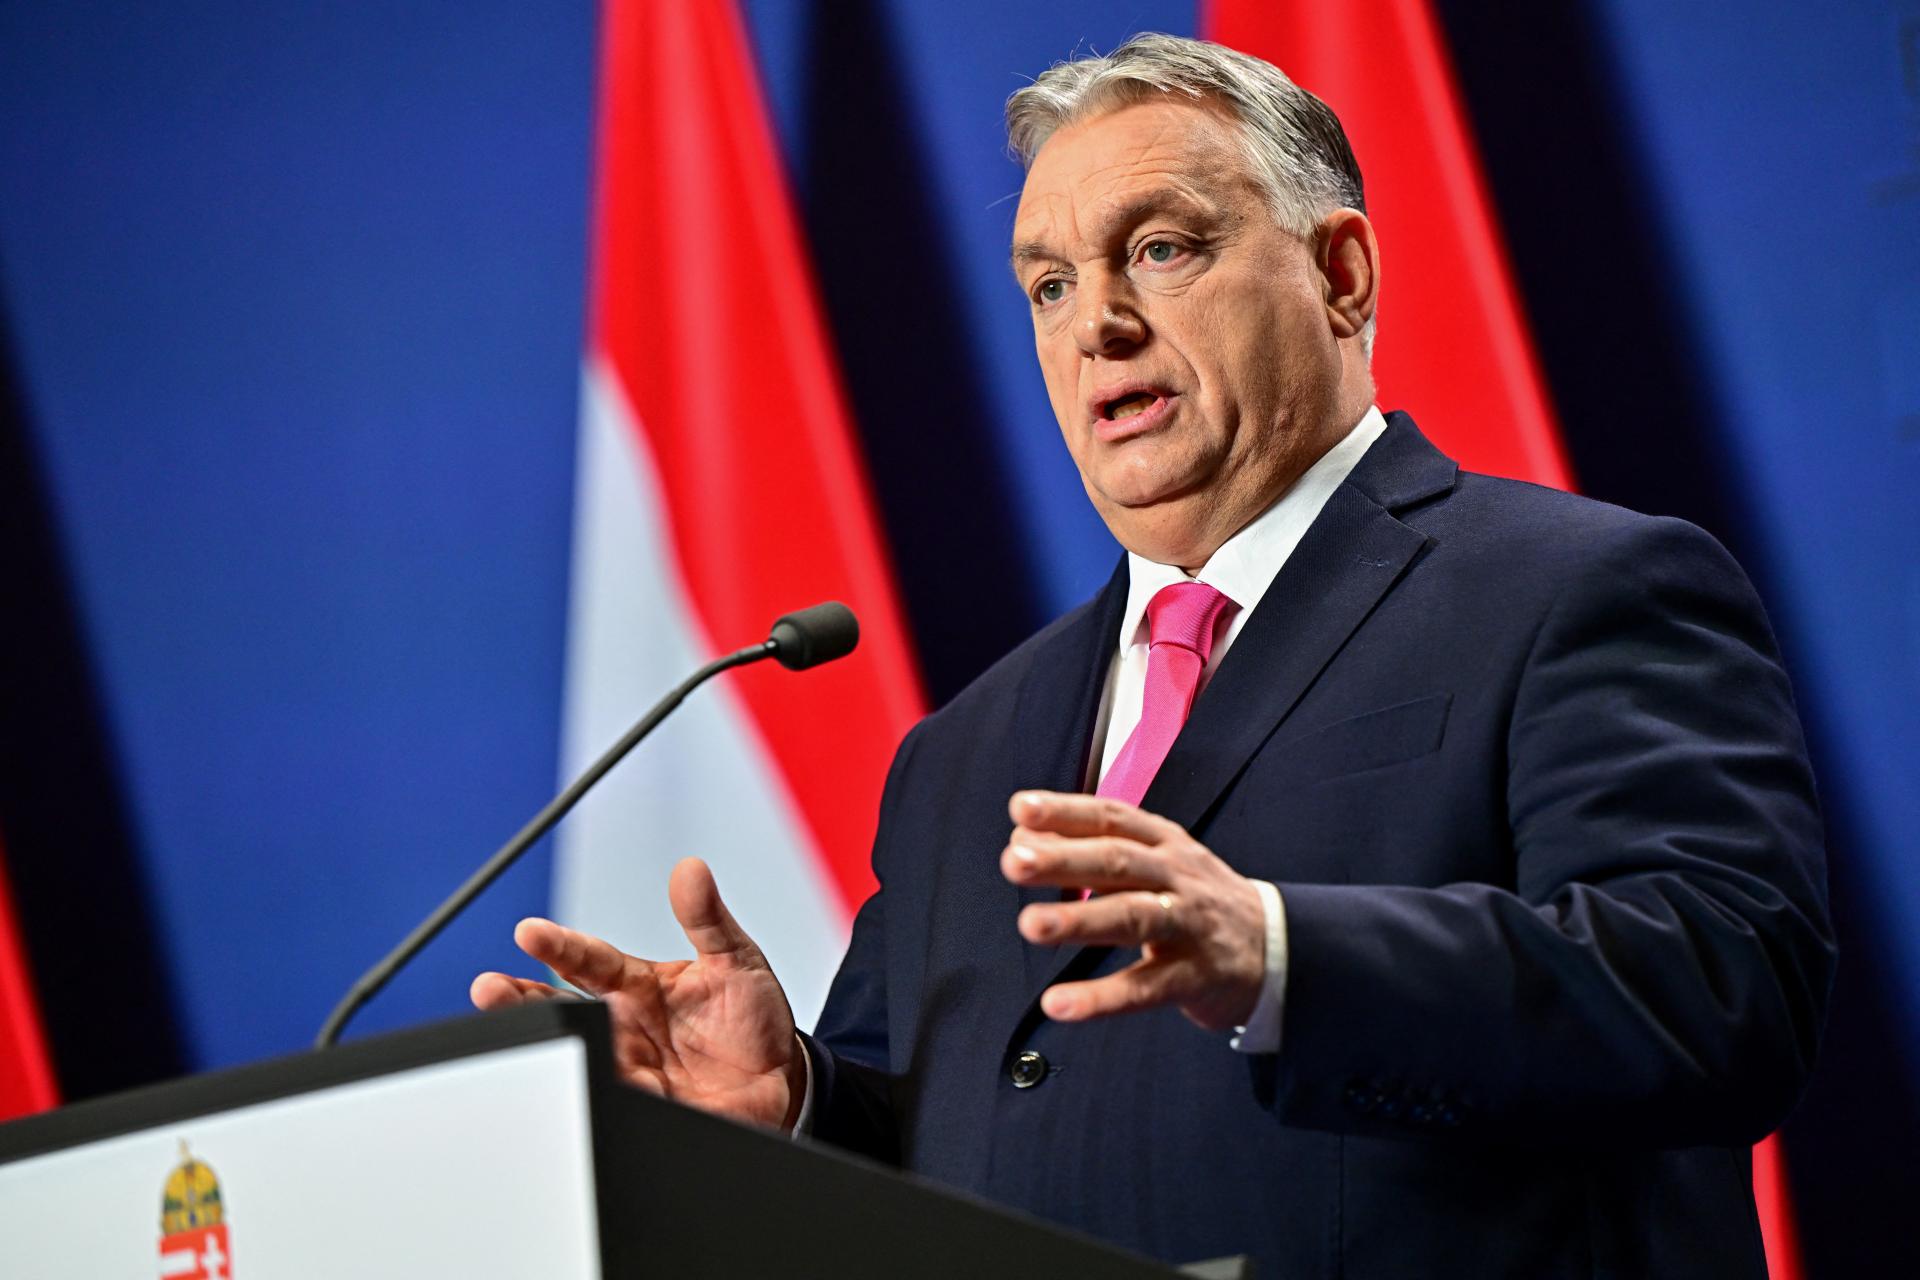 Bruselskí byrokrati žijú v bubline, vyhlásil Orbán. Migračný pakt EÚ je podľa neho odsúdený na neúspech